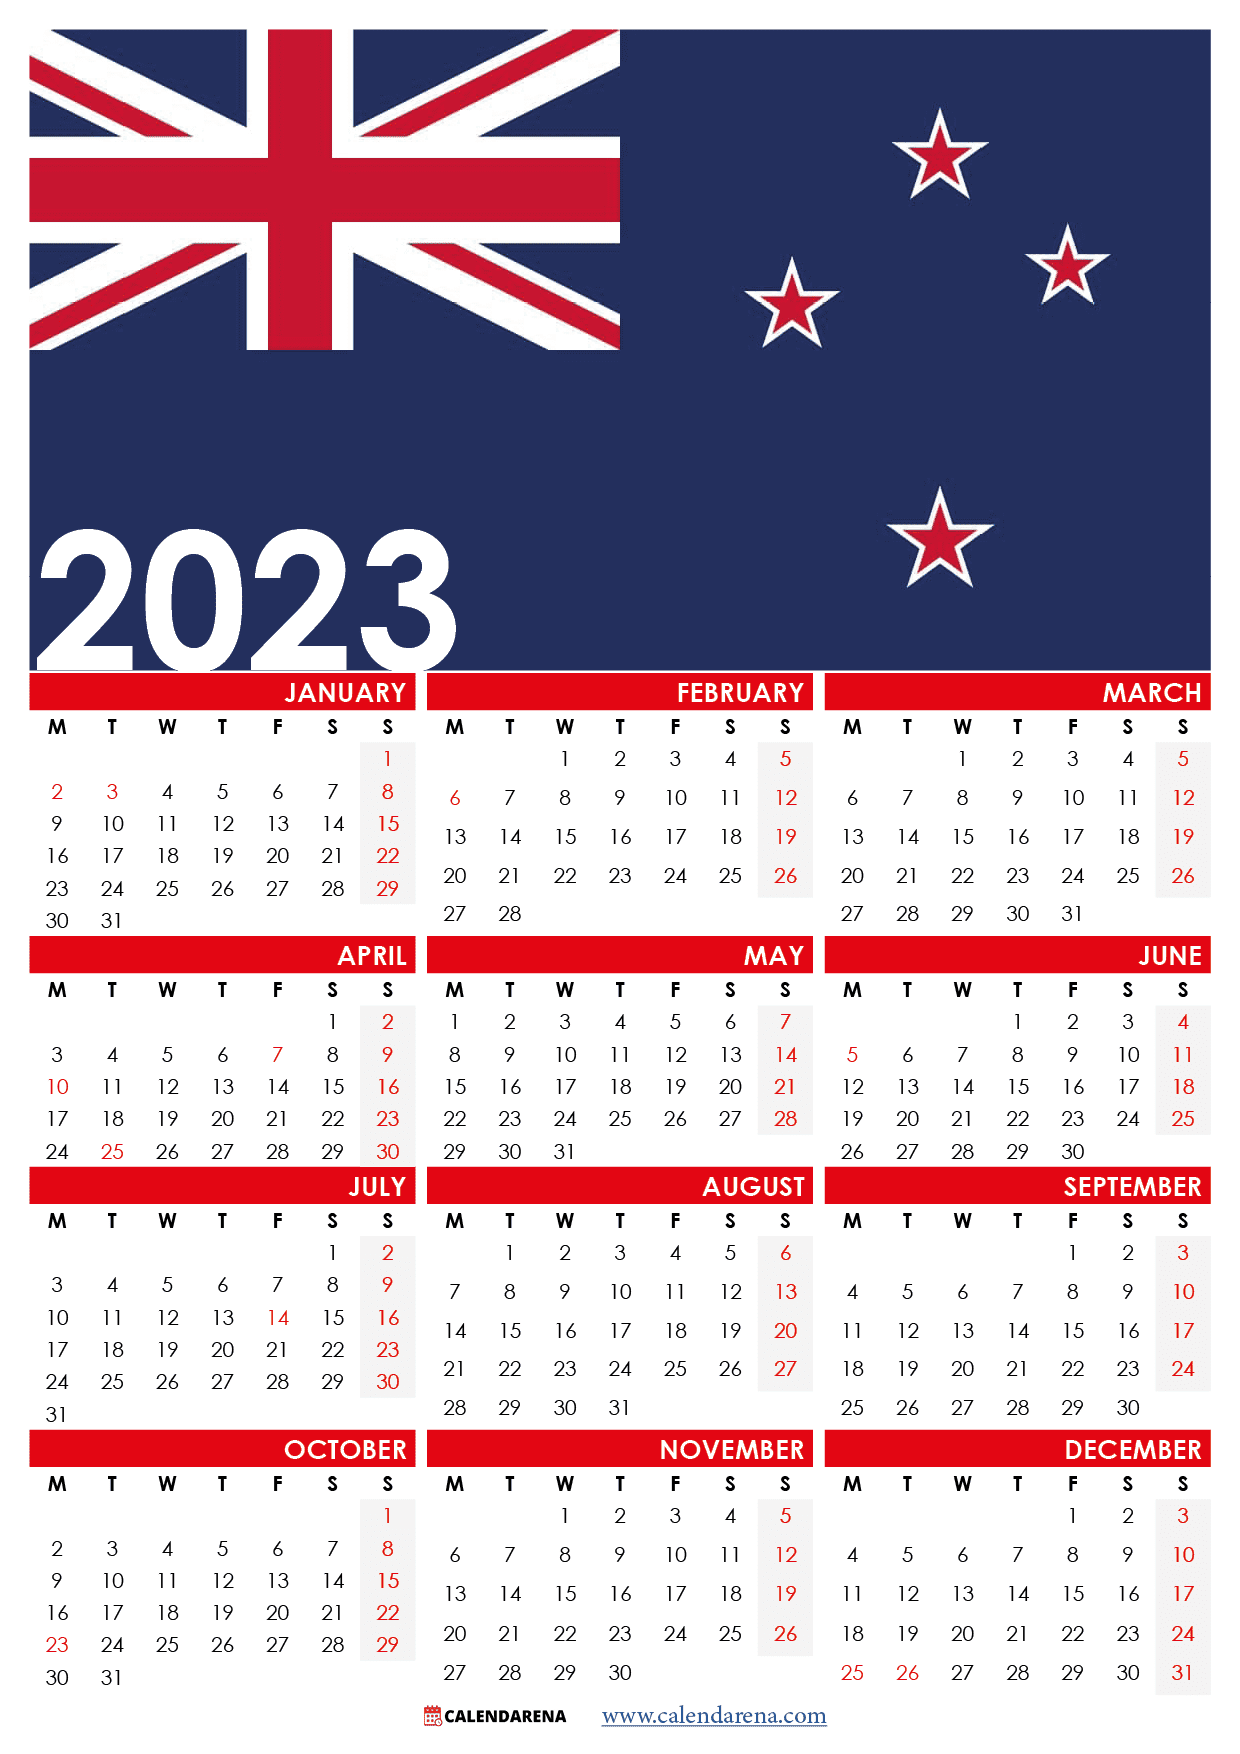 new-zealand-calendar-2023-with-holidays-get-calendar-2023-update